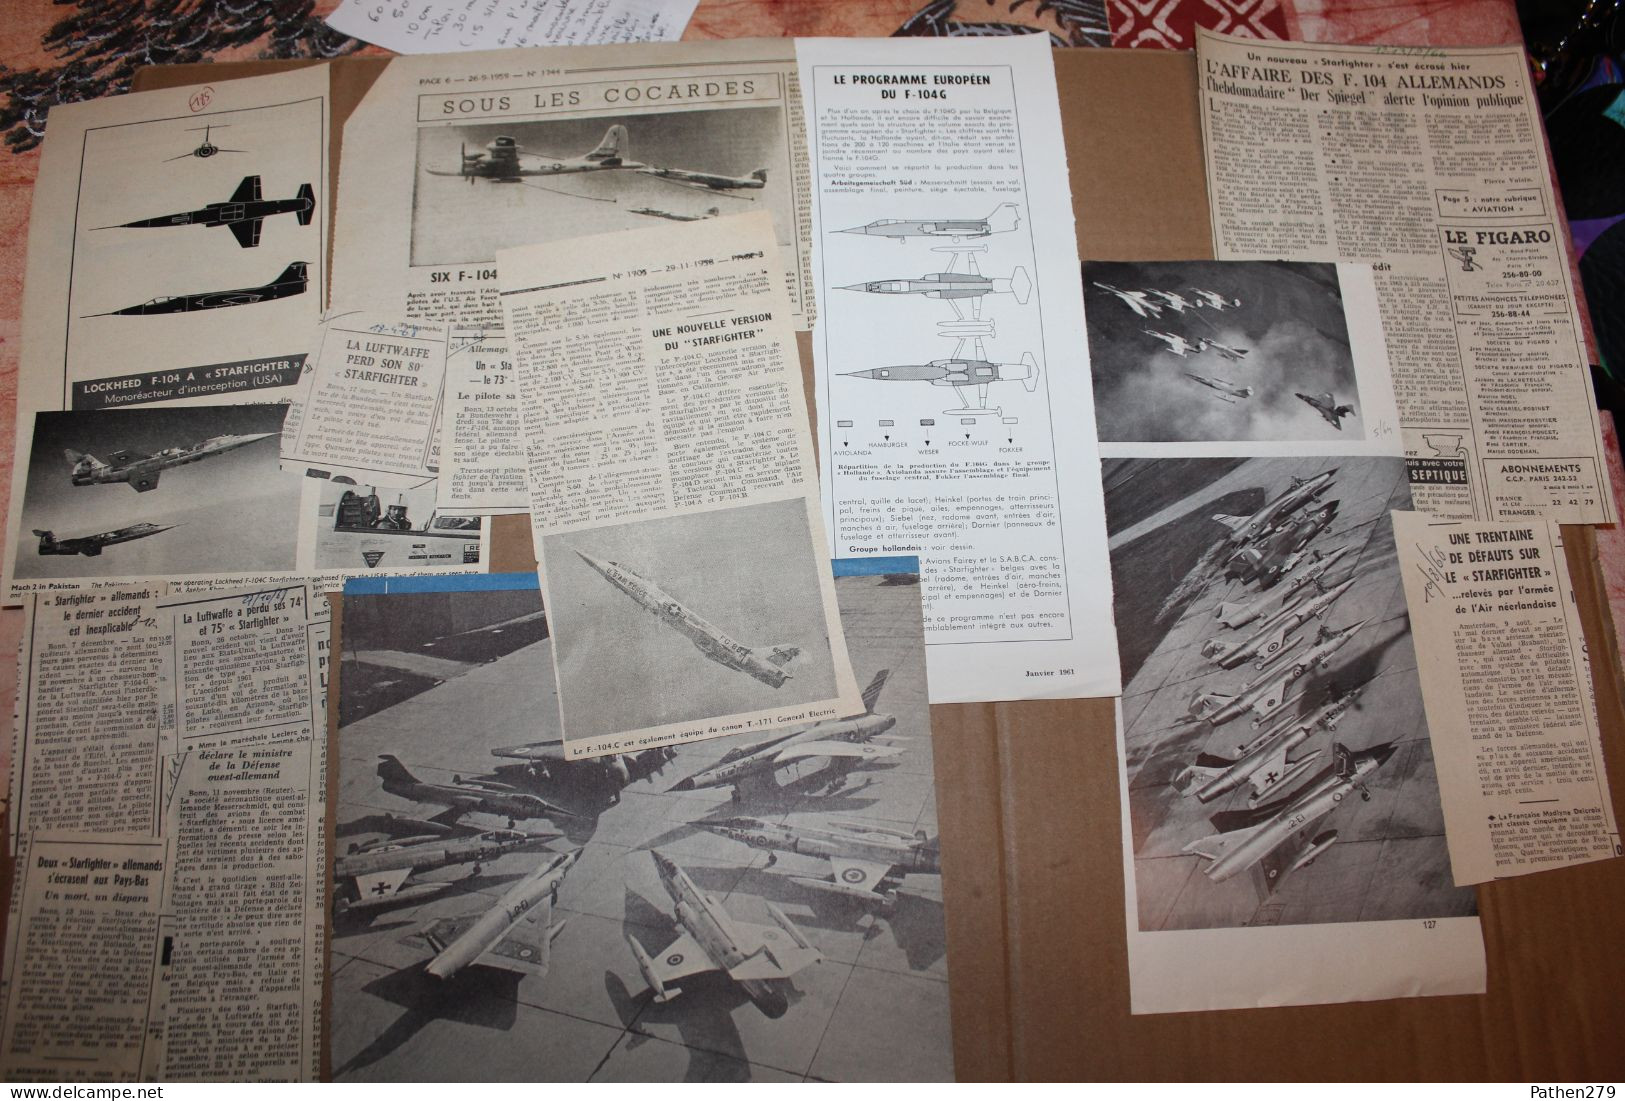 Lot de 667g d'anciennes coupures de presse et photos de l'aéronef américain Lockheed F-104 "Starfighter"